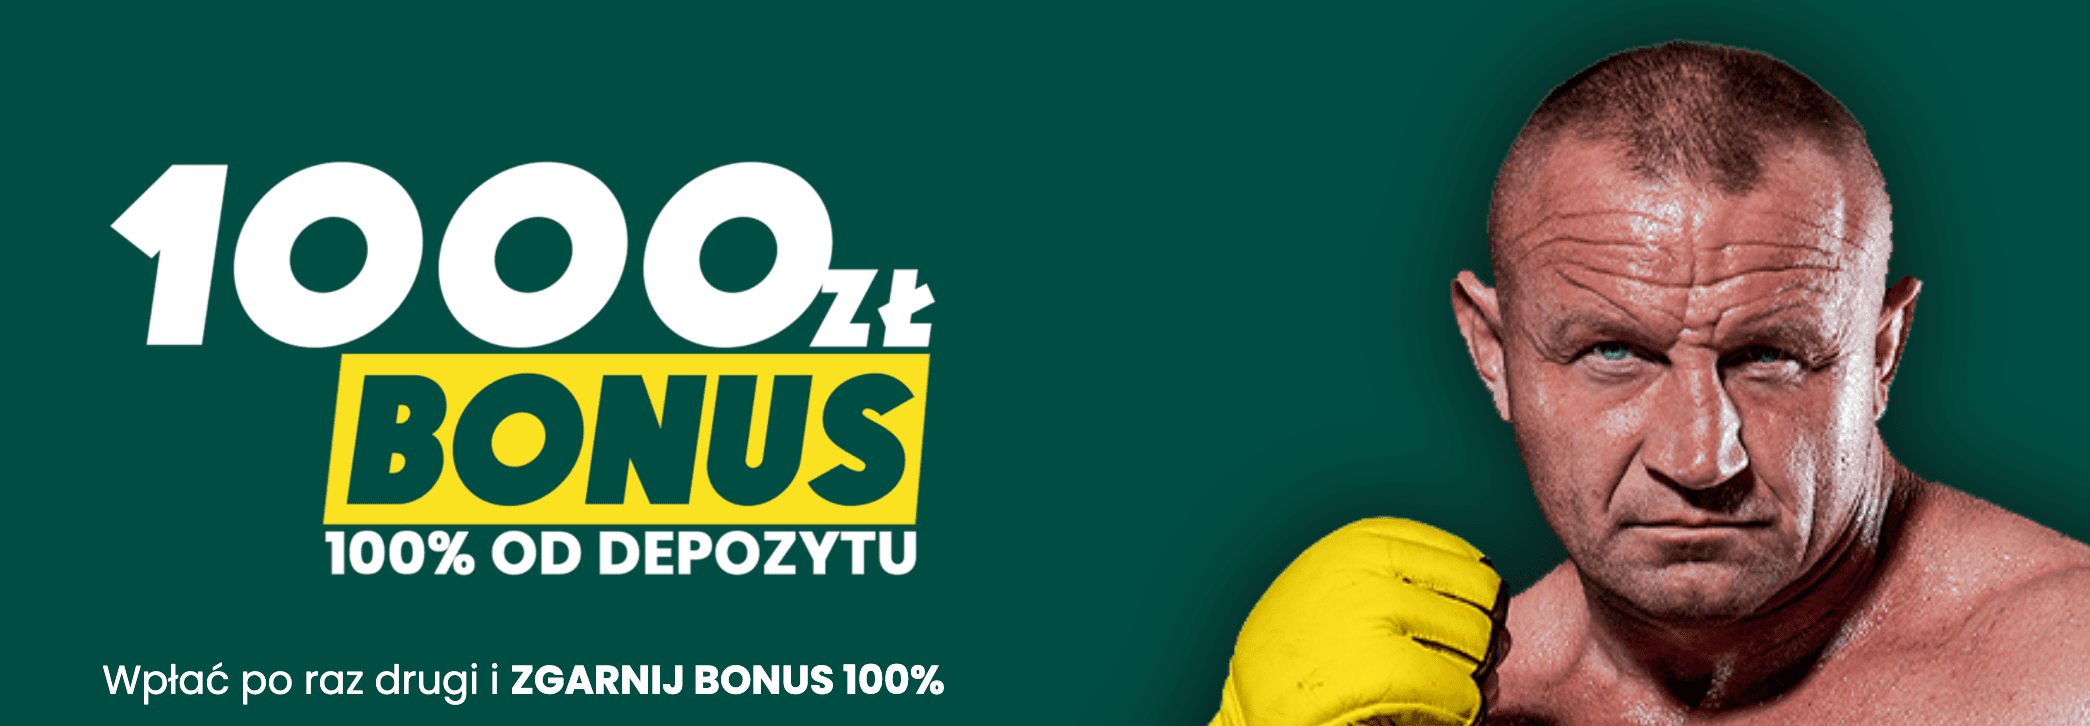 Mariusz Pudzianowski promujący bonus od depozytu w BETFAN.